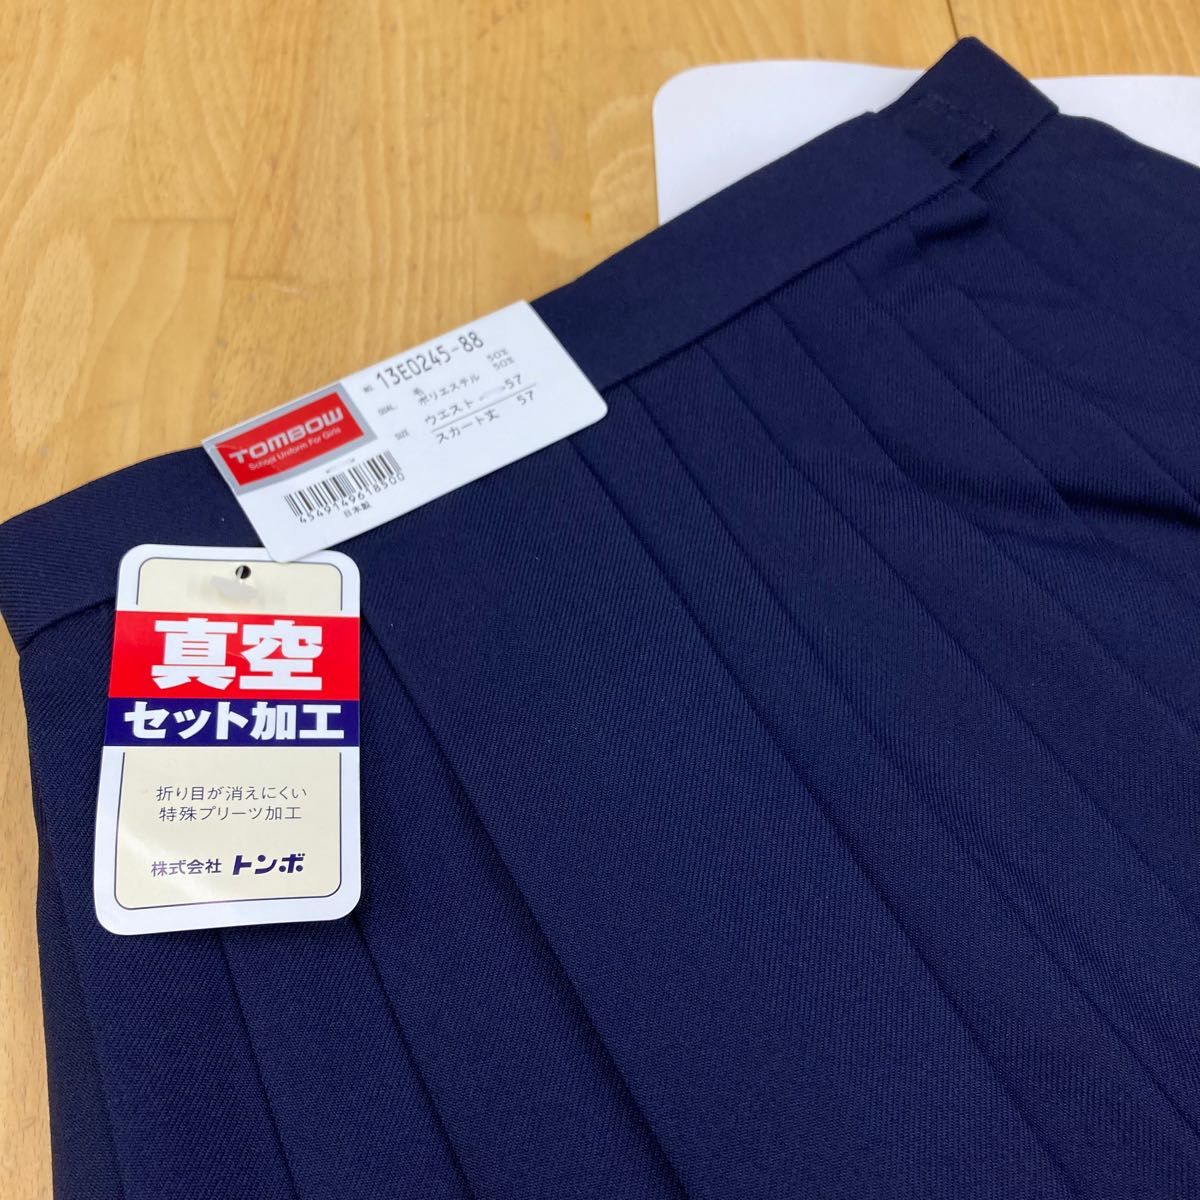 トンボ【セーラー服】スカート【W57-L57cm】未使用品